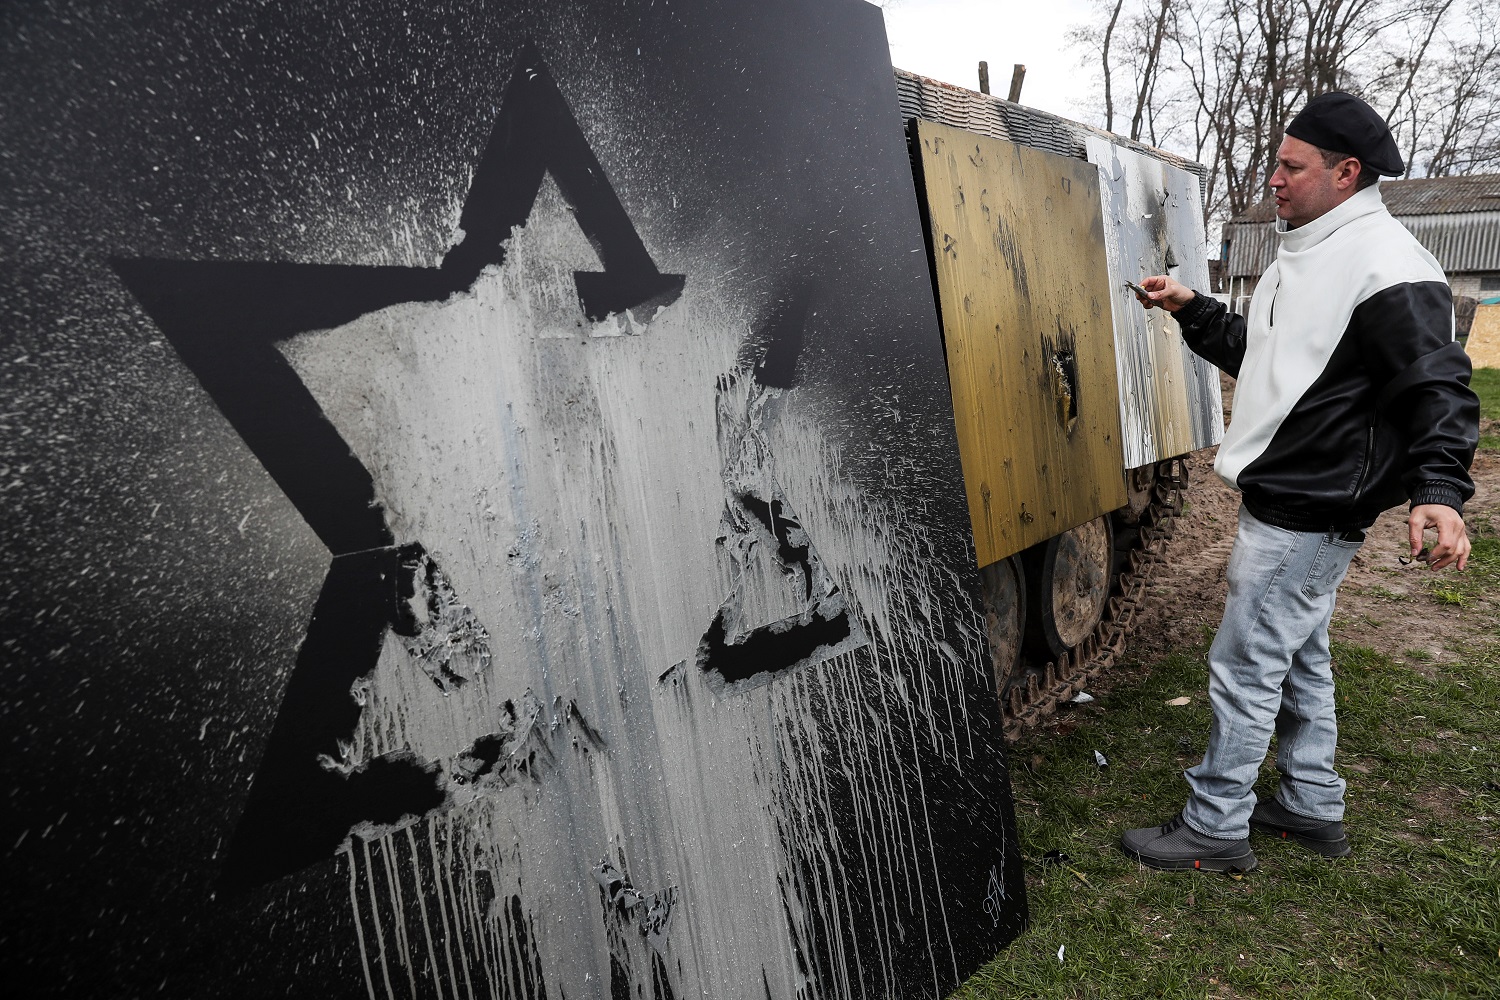 Ataque artístico: Exfrancotirador israelí dispara pintura y transmite mensaje sobre salud mental